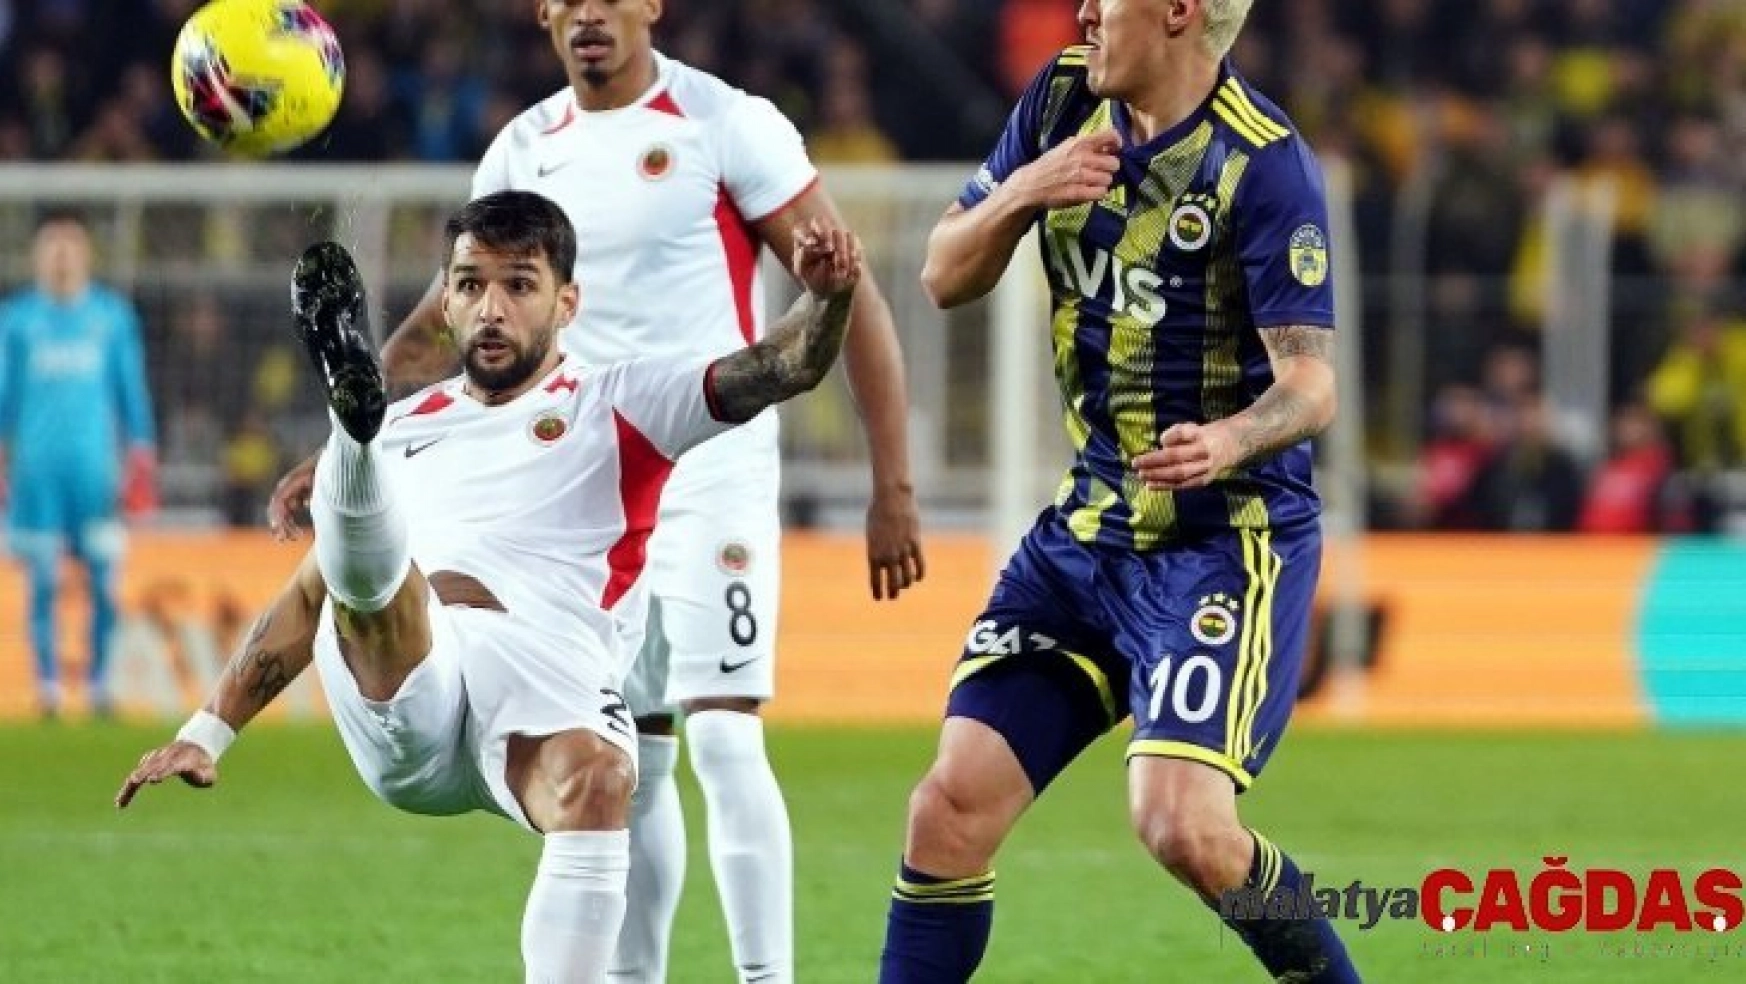 Süper Lig: Fenerbahçe: 3 - Gençlerbirliği: 1 (İlk yarı)